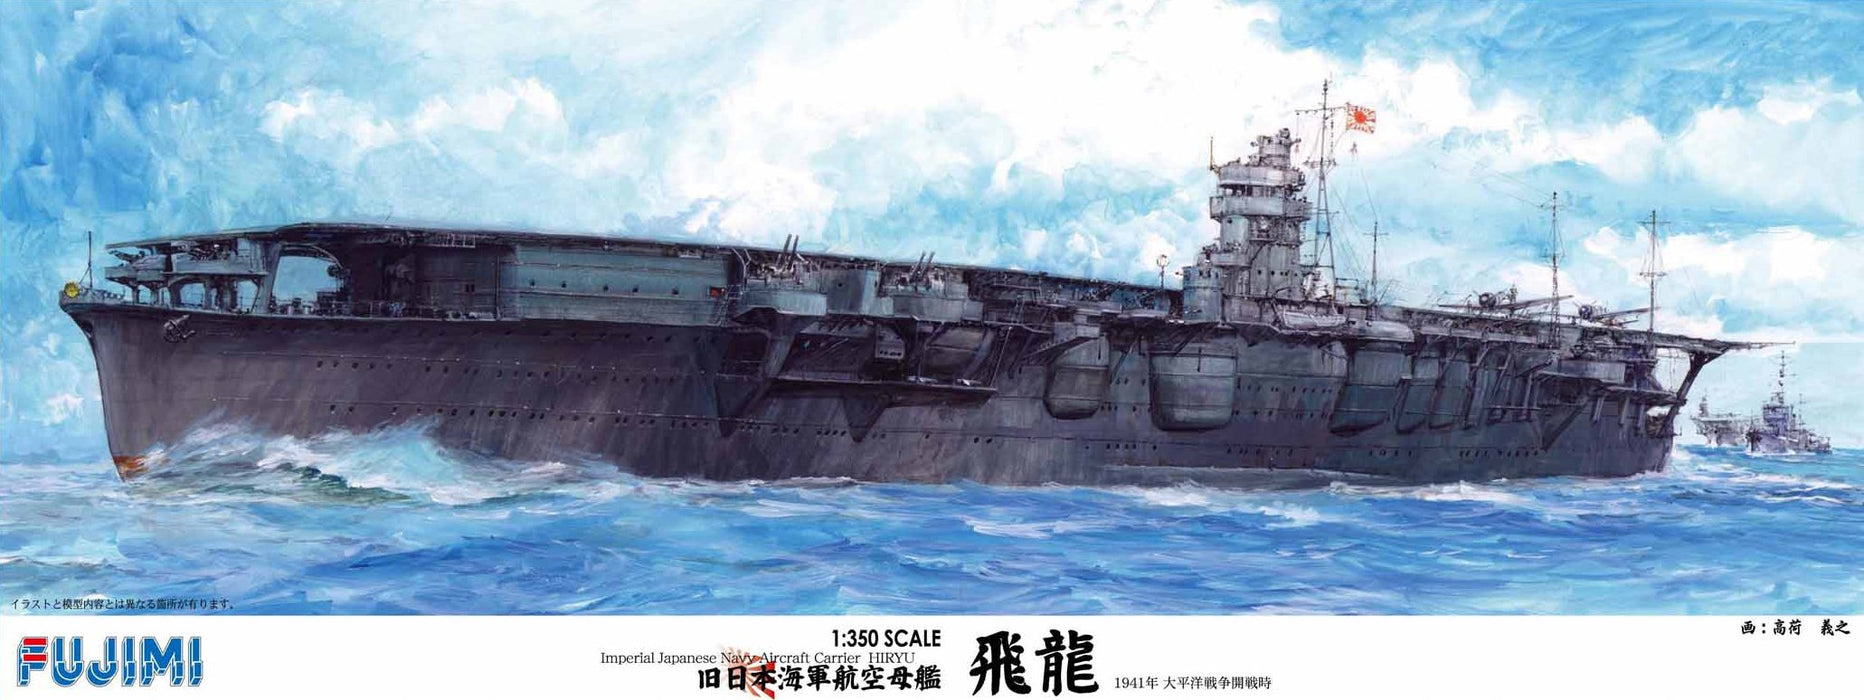 Fujimi modèle 1/350 série de navires ancien porte-avions de la marine impériale japonaise Hiryu Dx